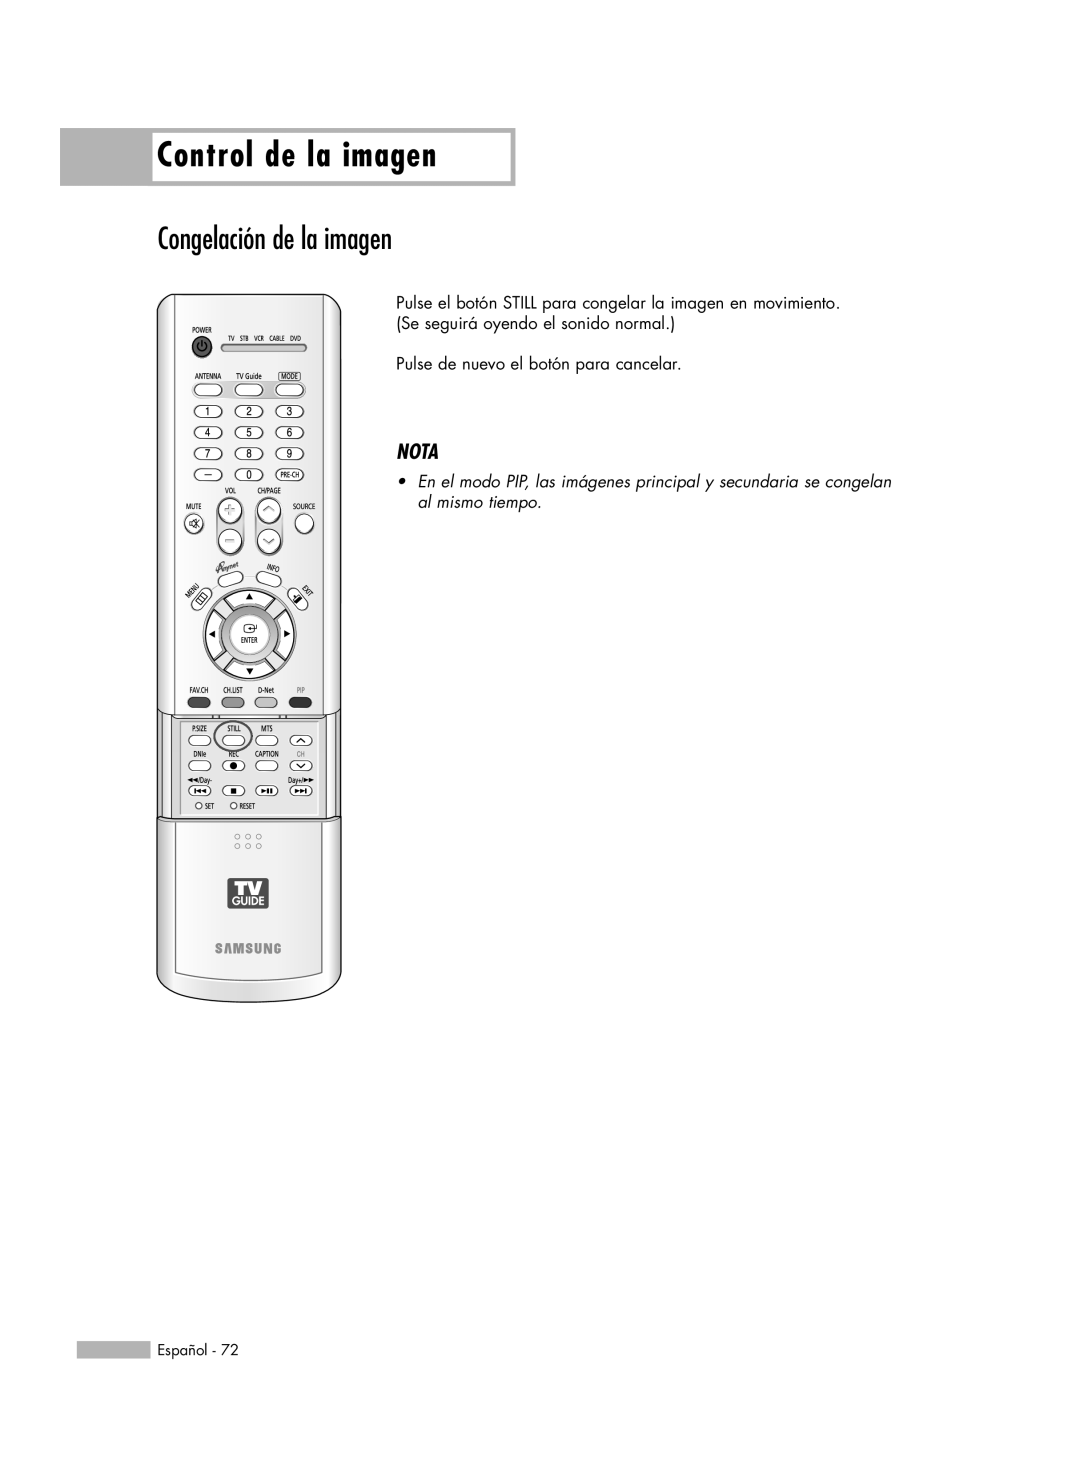 Samsung HL-R6178W, HL-R5078W Congelación de la imagen, Control de la imagen, Nota, Pulse de nuevo el botón para cancelar 